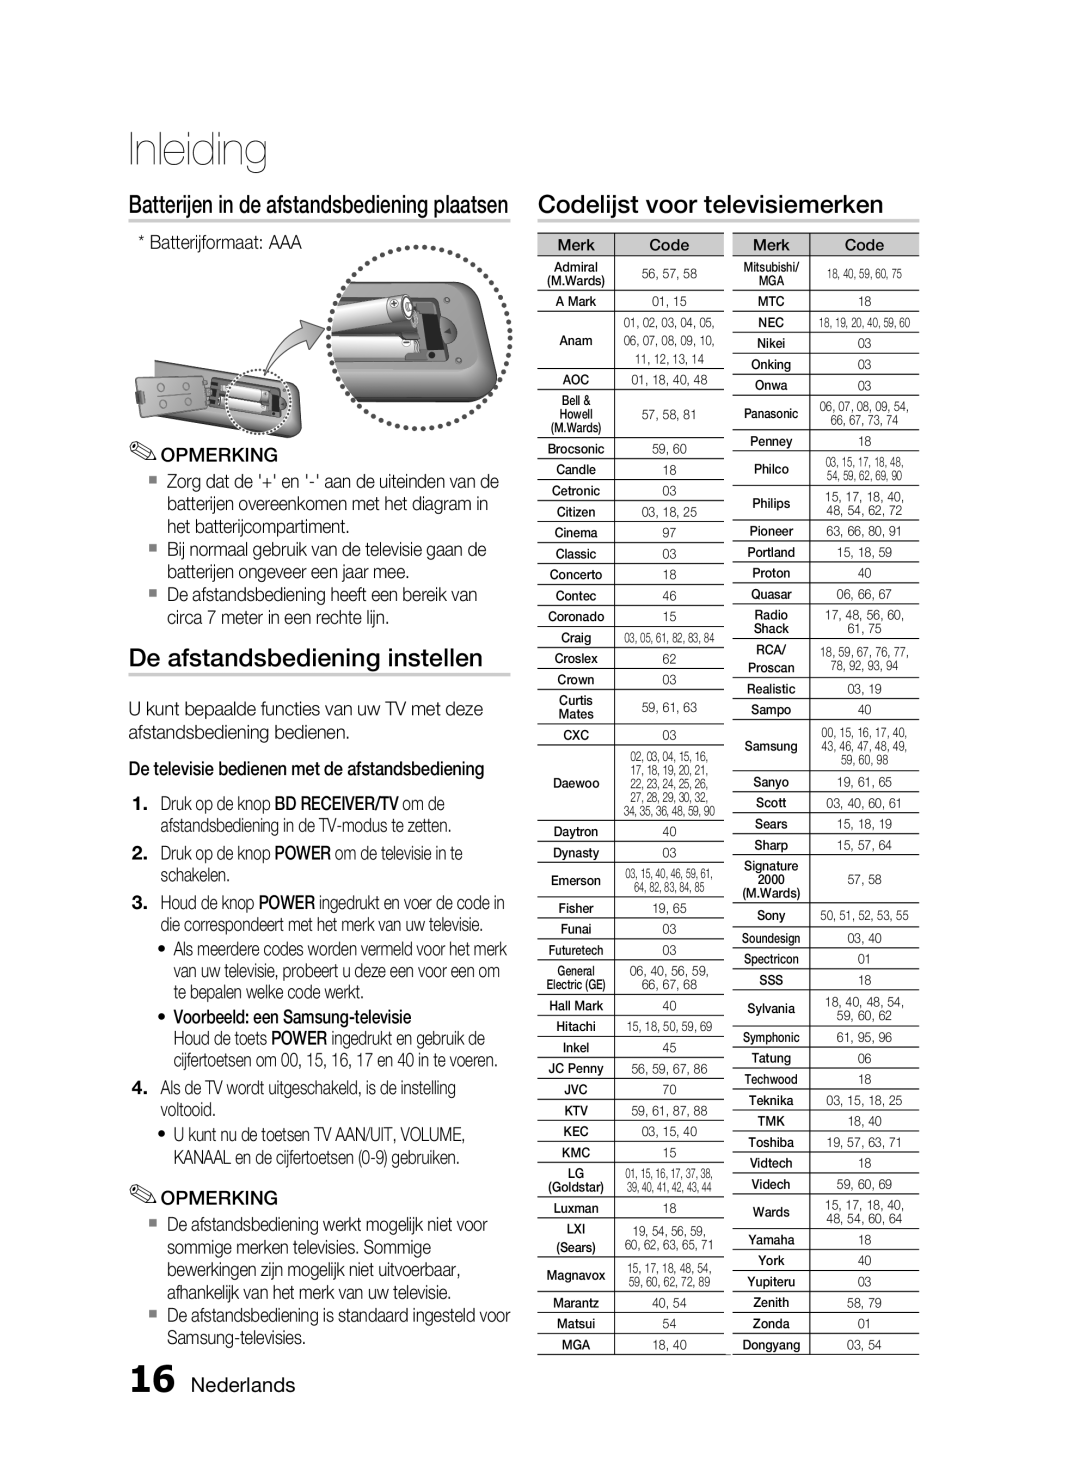 Samsung HT-C6200/XEF manual Codelijst voor televisiemerken, De afstandsbediening instellen, Nederlands, Inleiding 